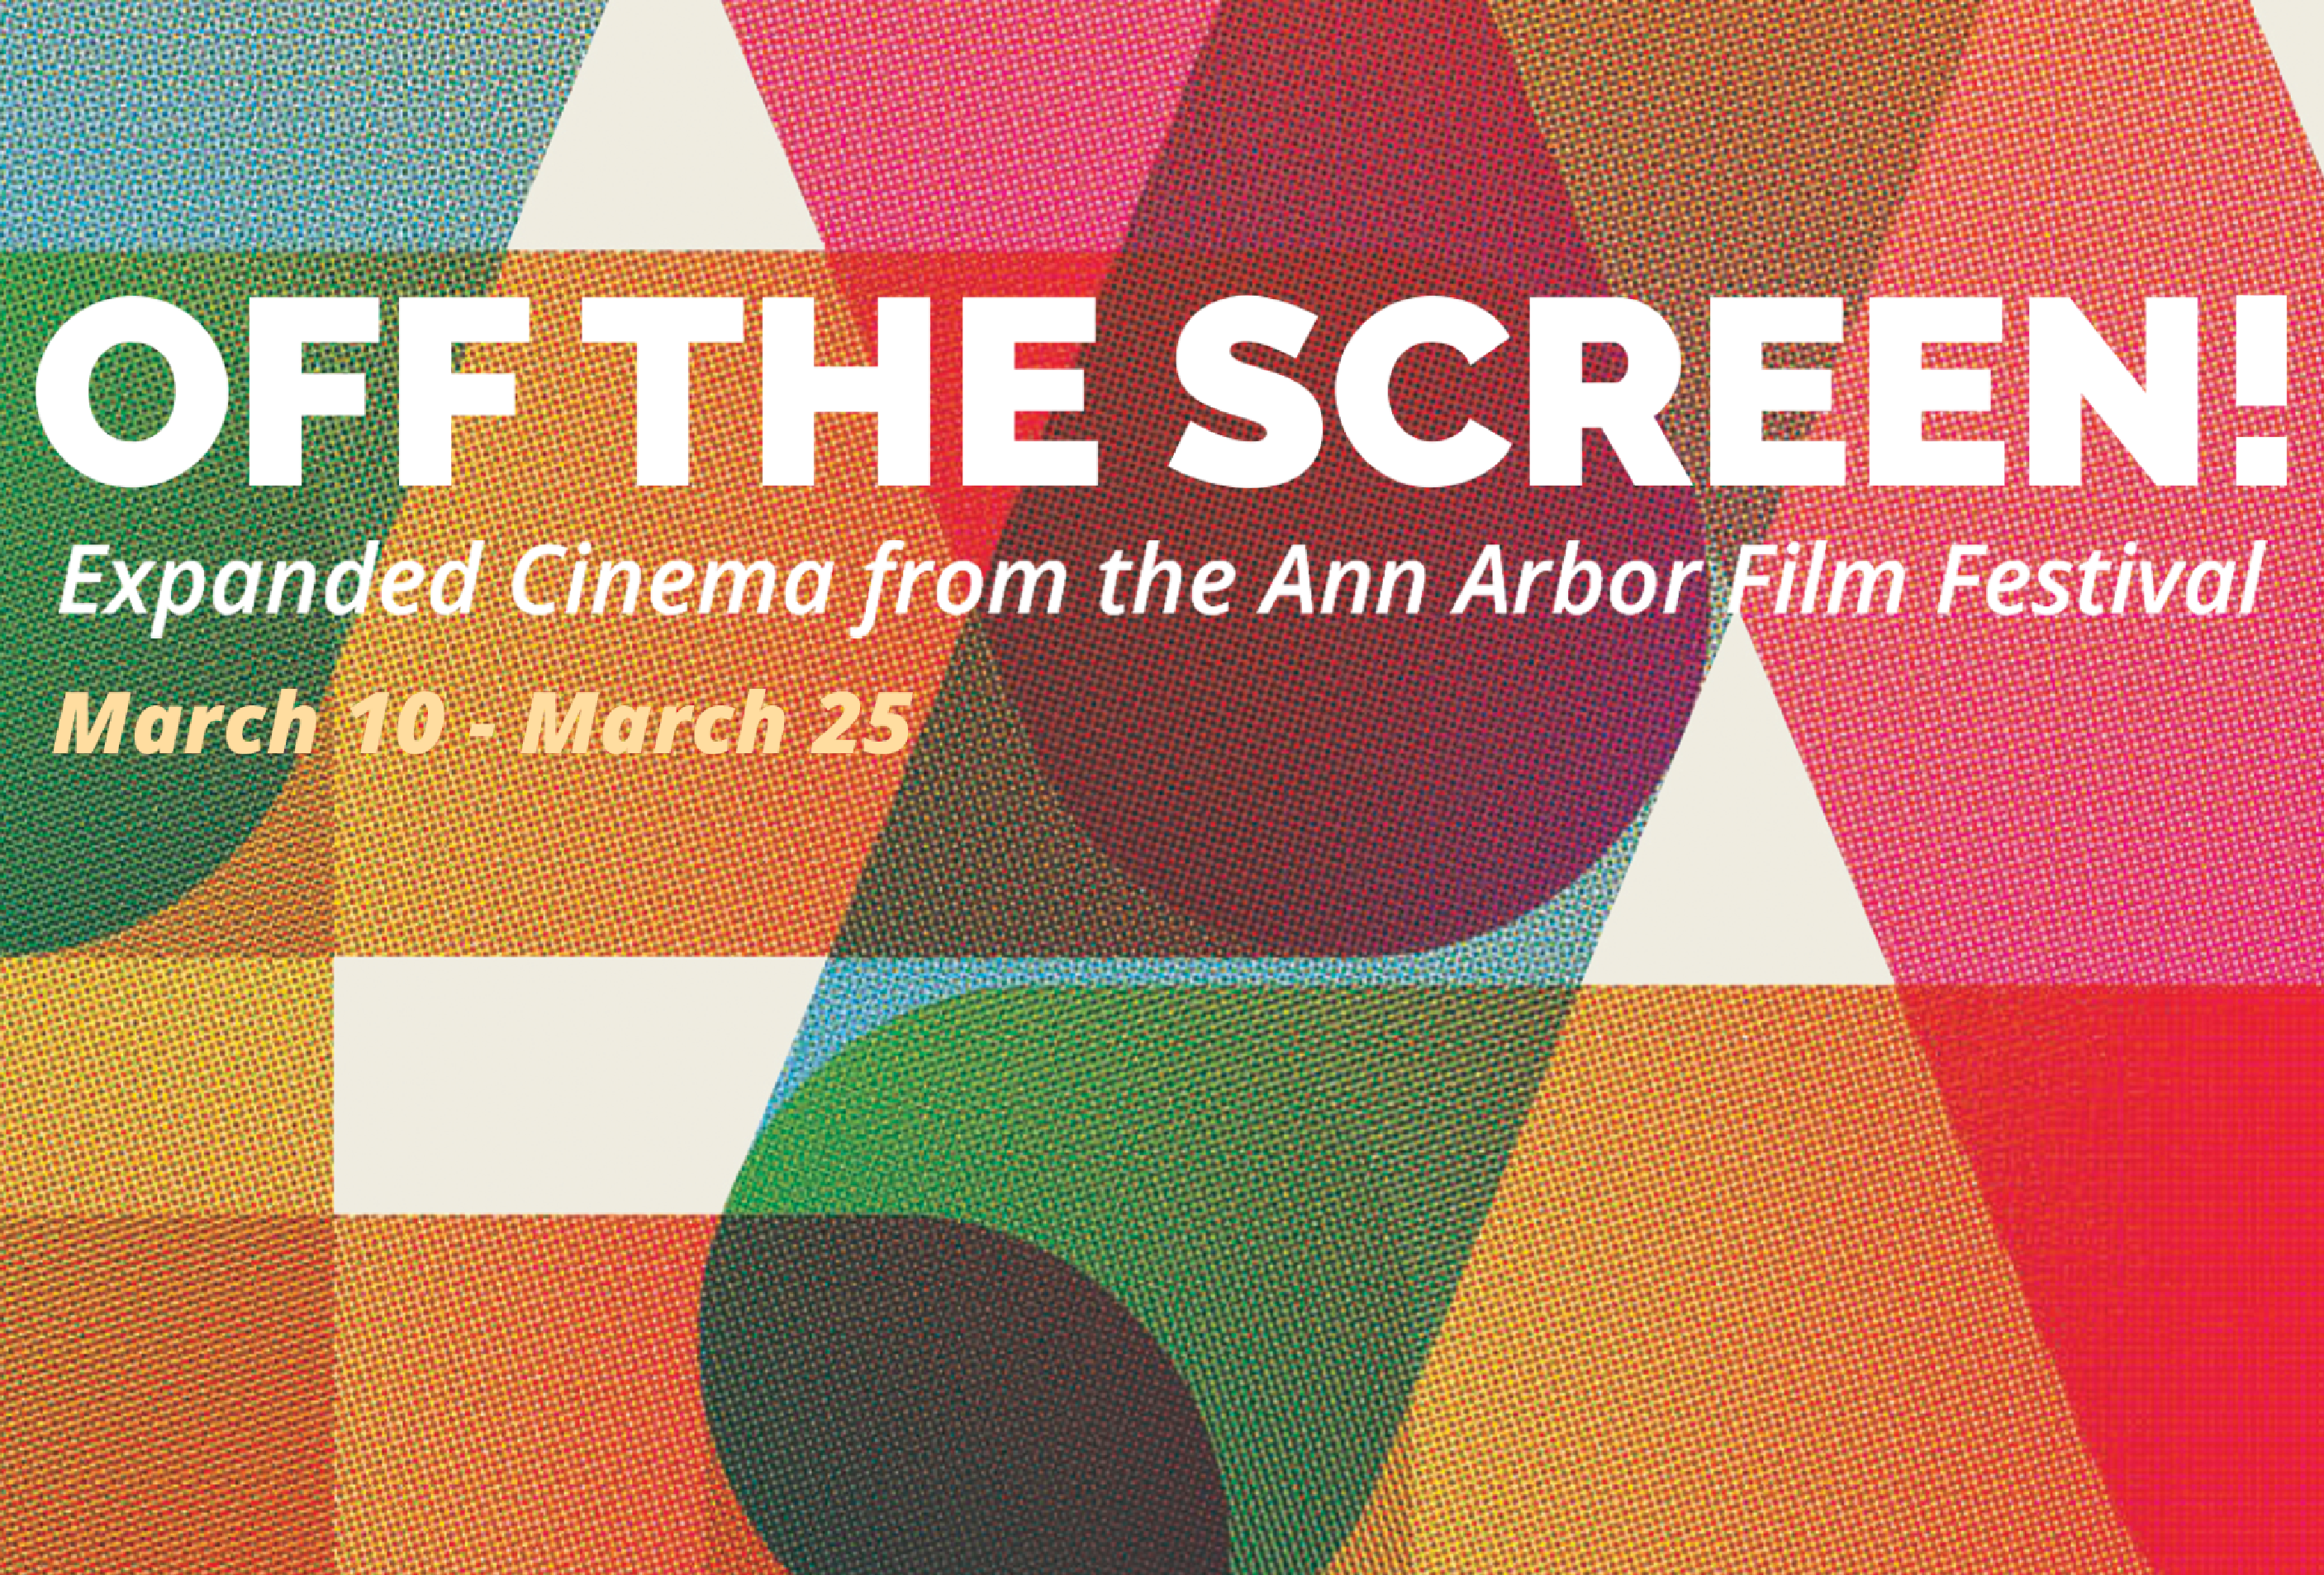 Off the screen Ann Arbor Art Center Ann Arbor Film Festival Exhibition